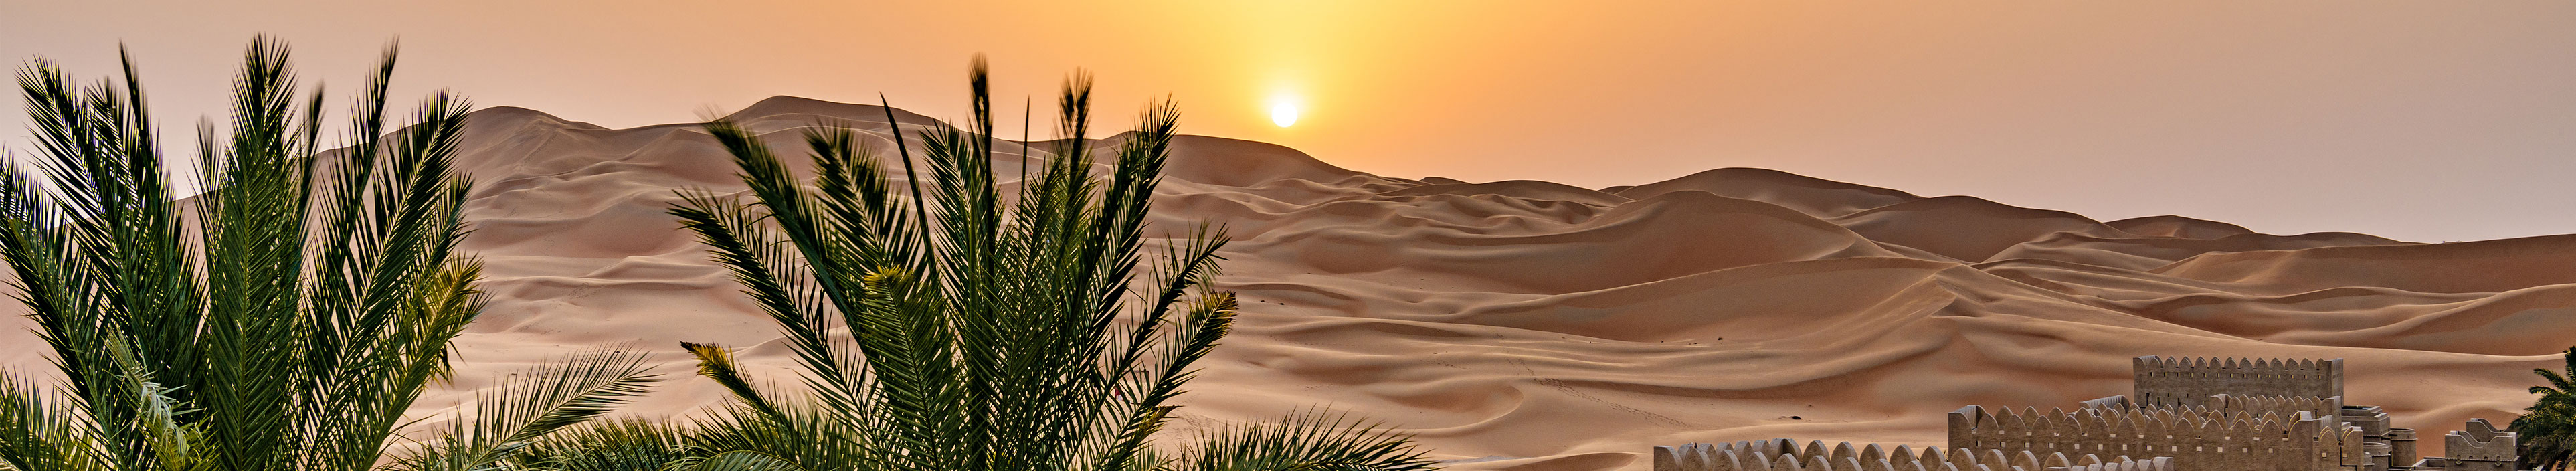 Wüste Qasr Al Sarab, Abu Dhabi, Vereinigte Arabische Emirate beim Sonnenuntergang